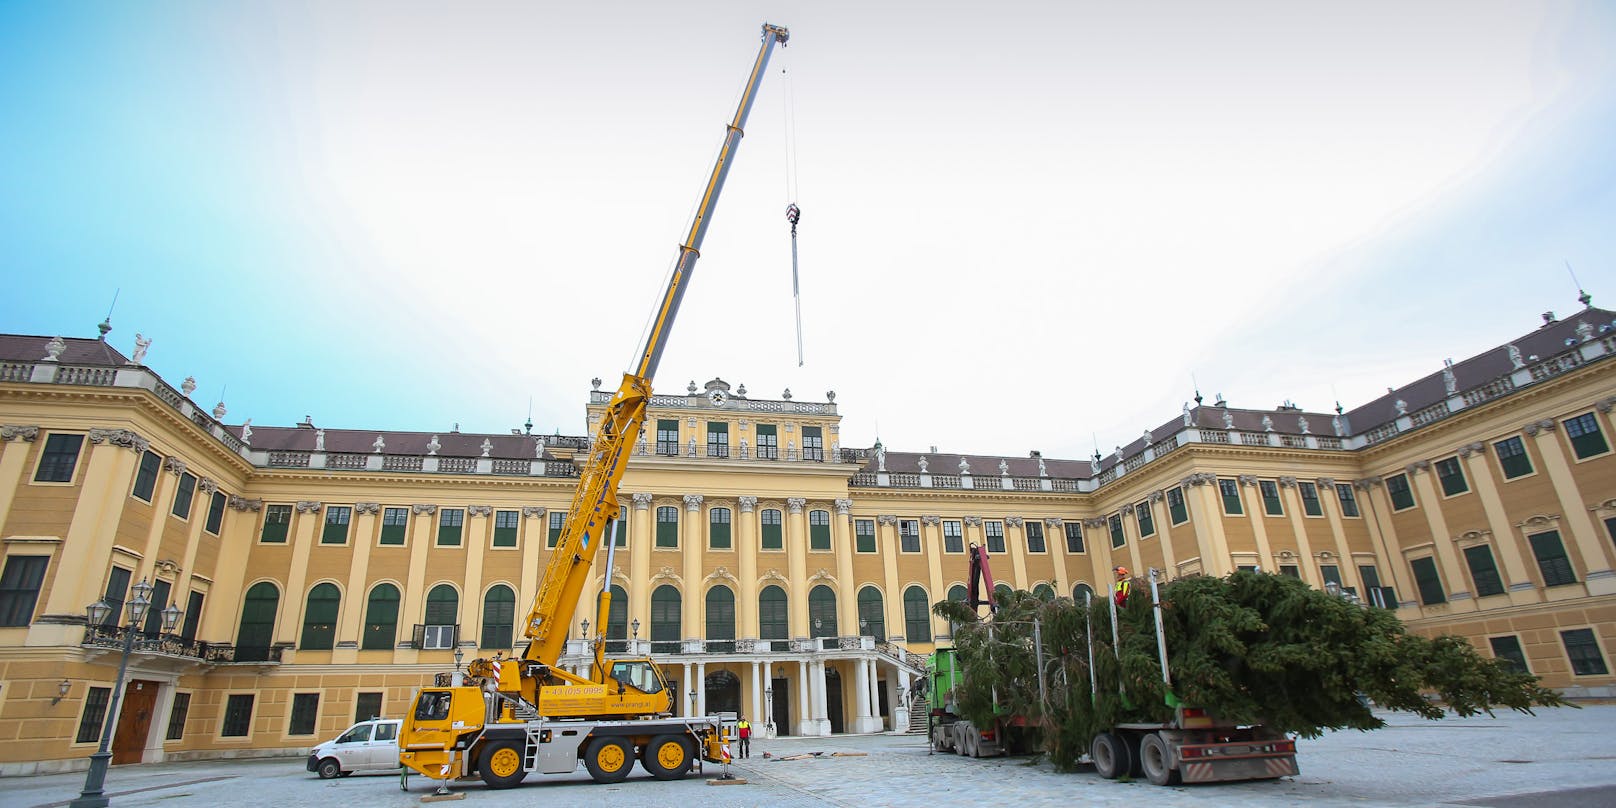 Der prächtige Baum wurde aus der Steiermark nach Wien gebracht.